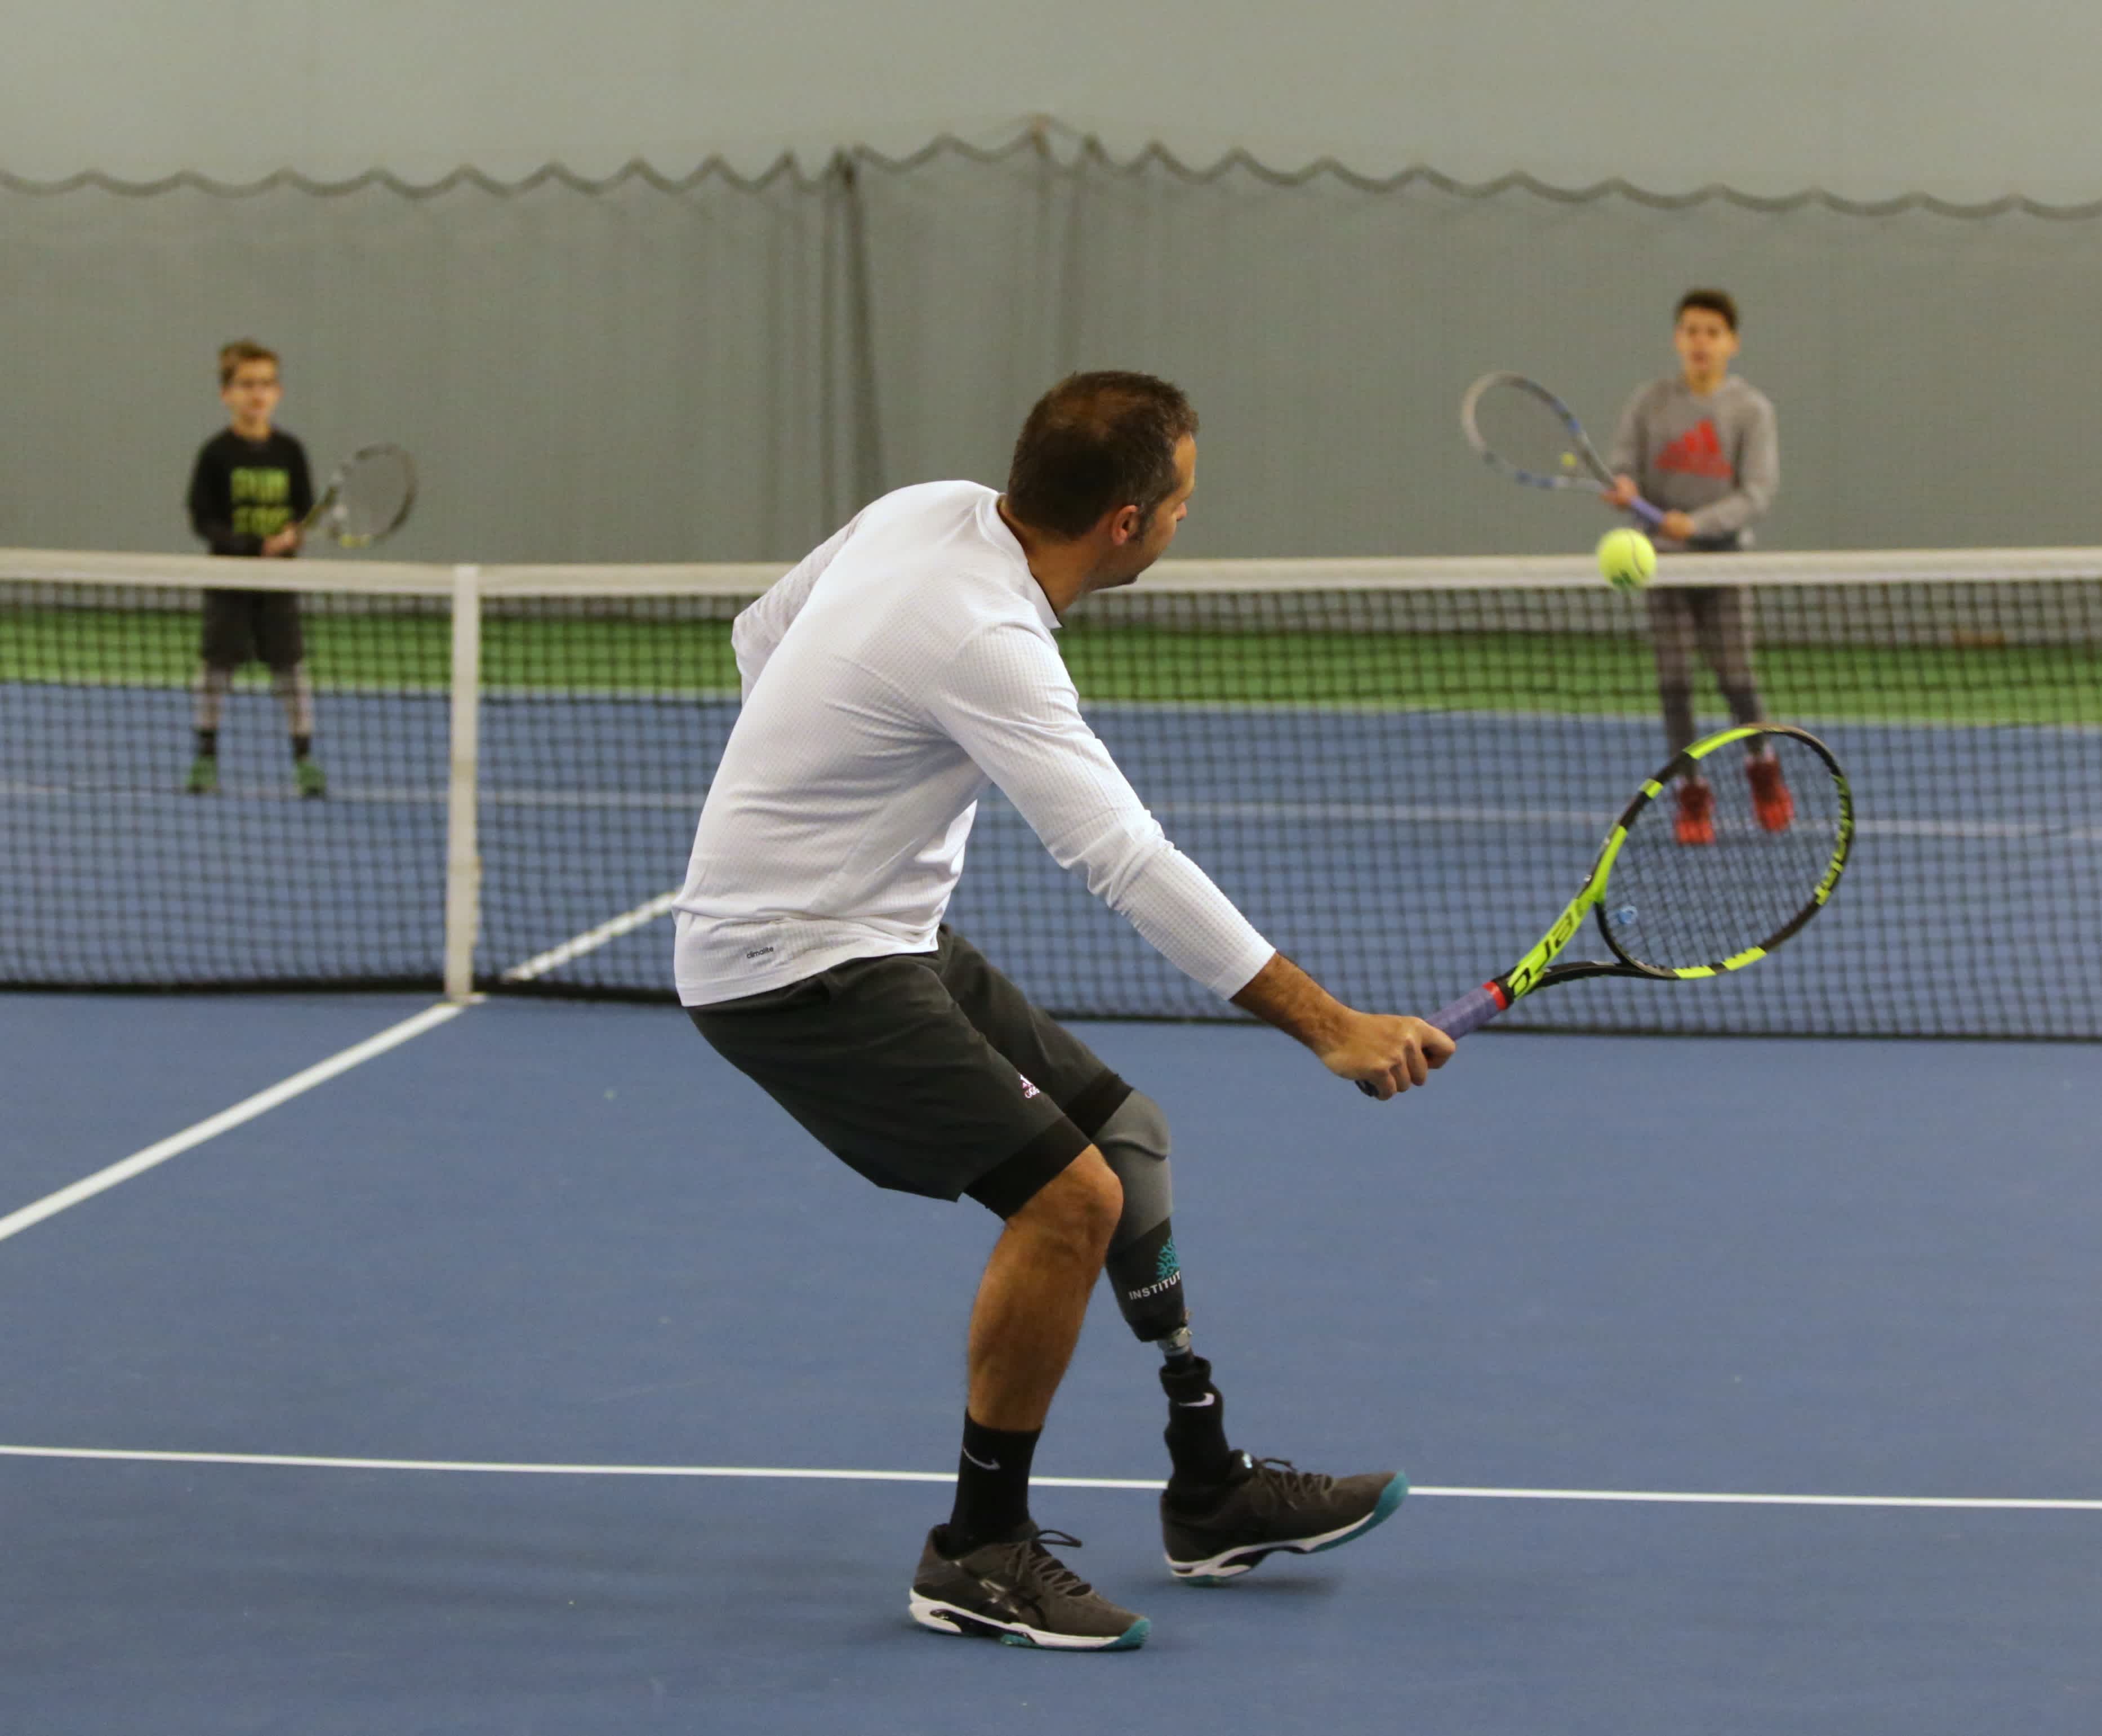 En man med benprotes spelar tennis mot två yngre pojkar.